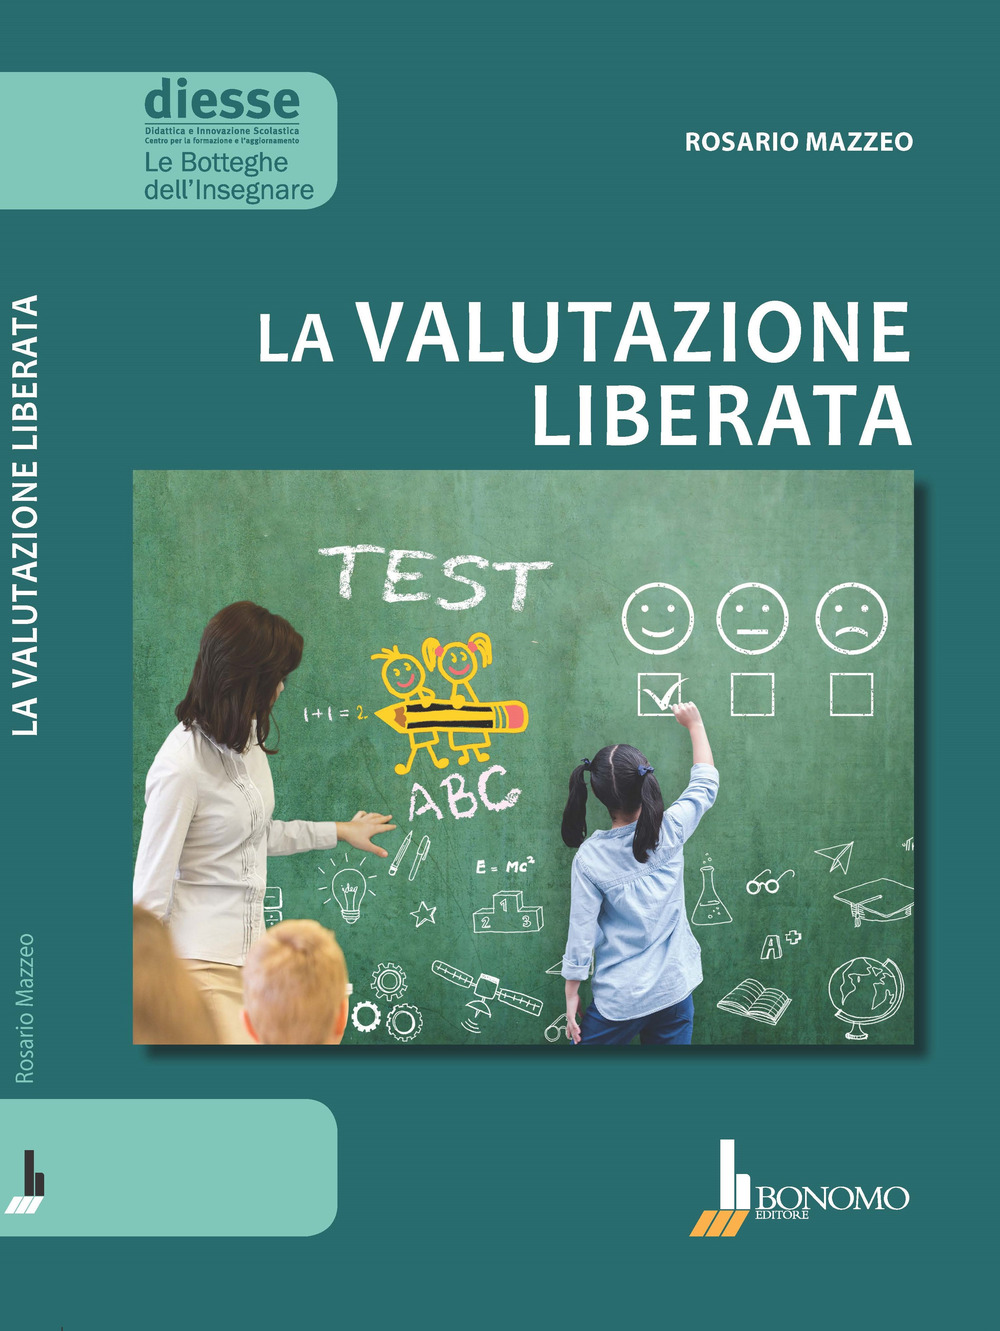 Libri Rosario Mazzeo - La Valutazione Liberata NUOVO SIGILLATO, EDIZIONE DEL 01/03/2019 SUBITO DISPONIBILE